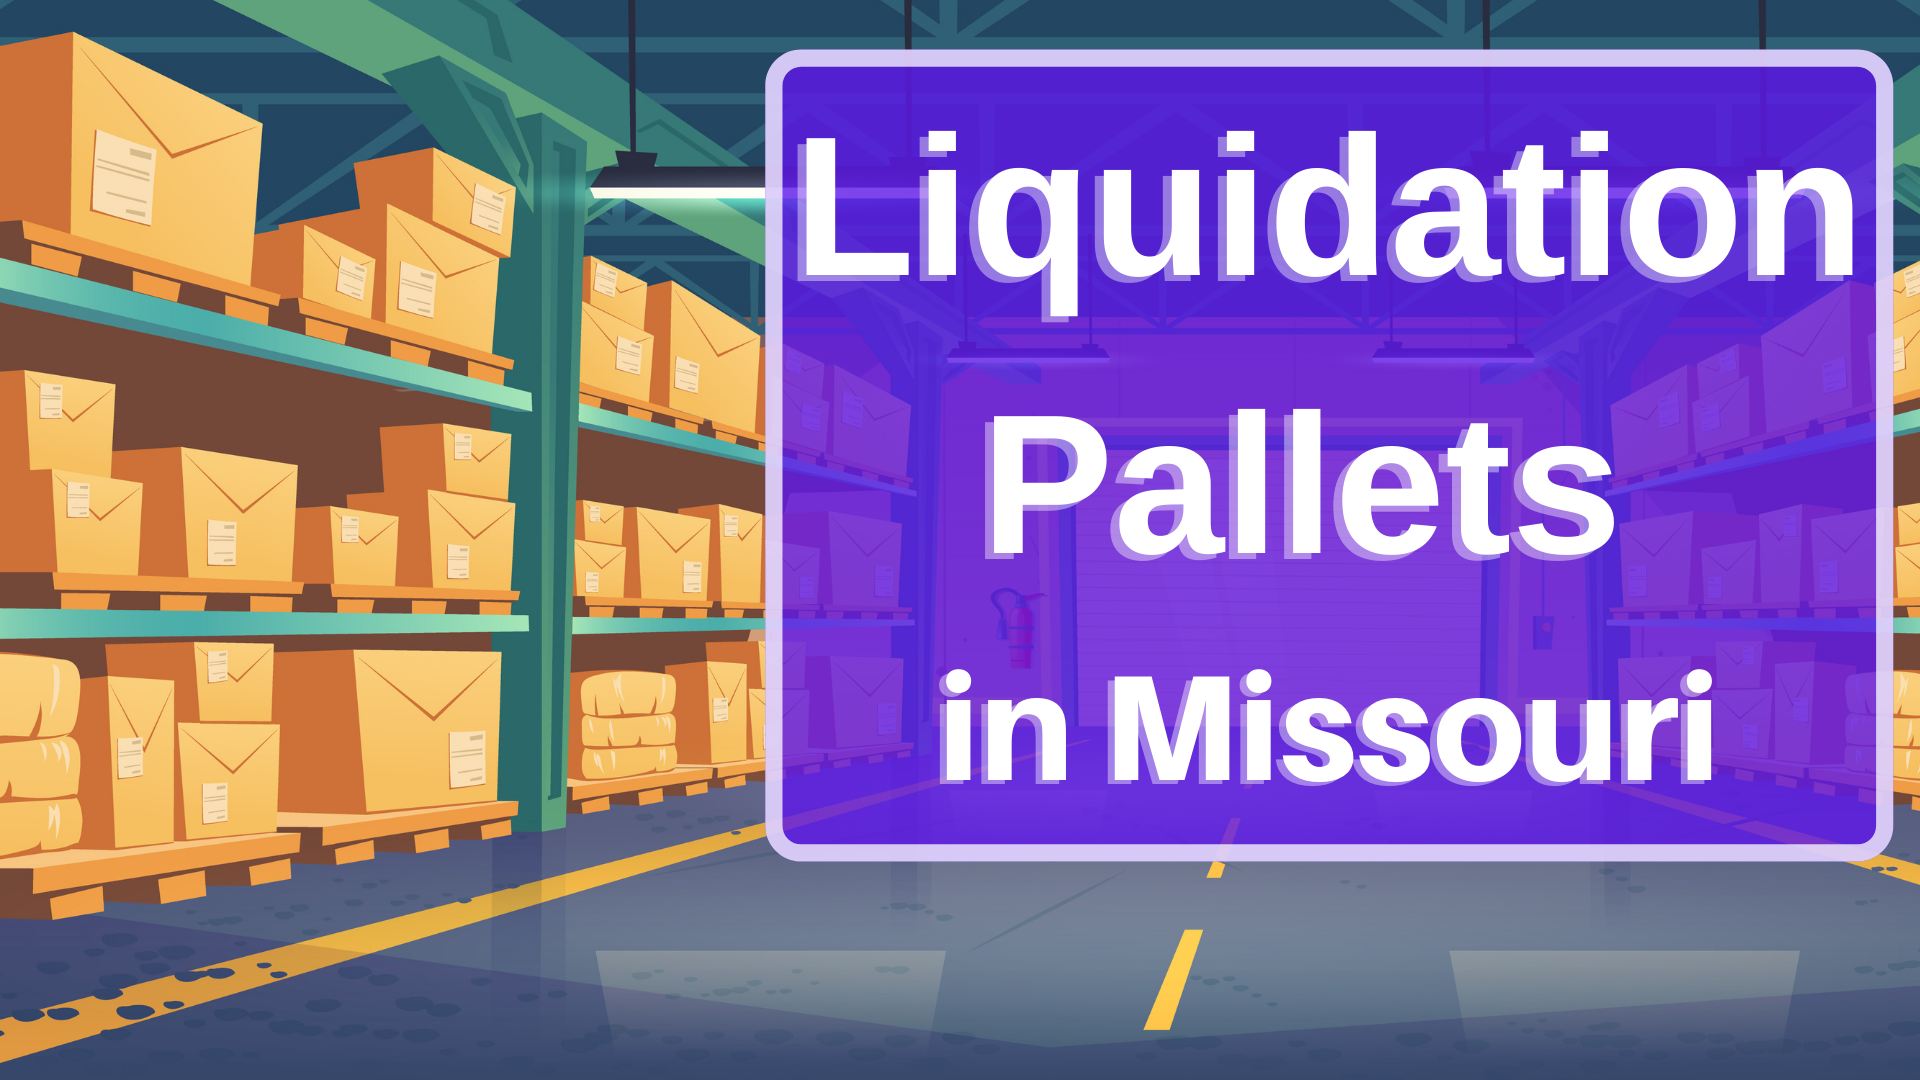 Liquidation Pallets in Missouri